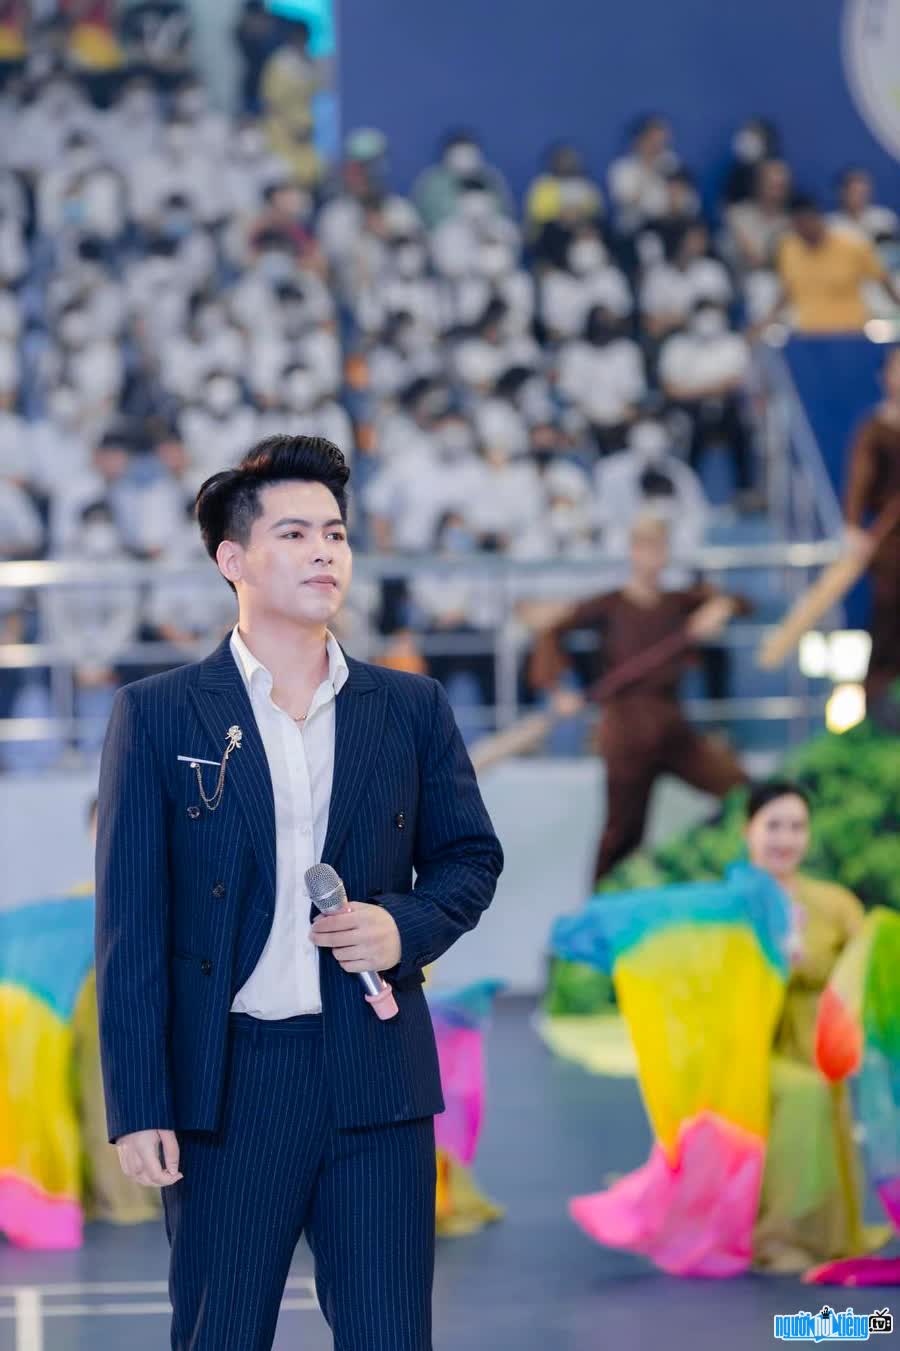 Ca sĩ Thanh Bình vừa cho ra mắt single đầu tay mang tên "Tấm hình"